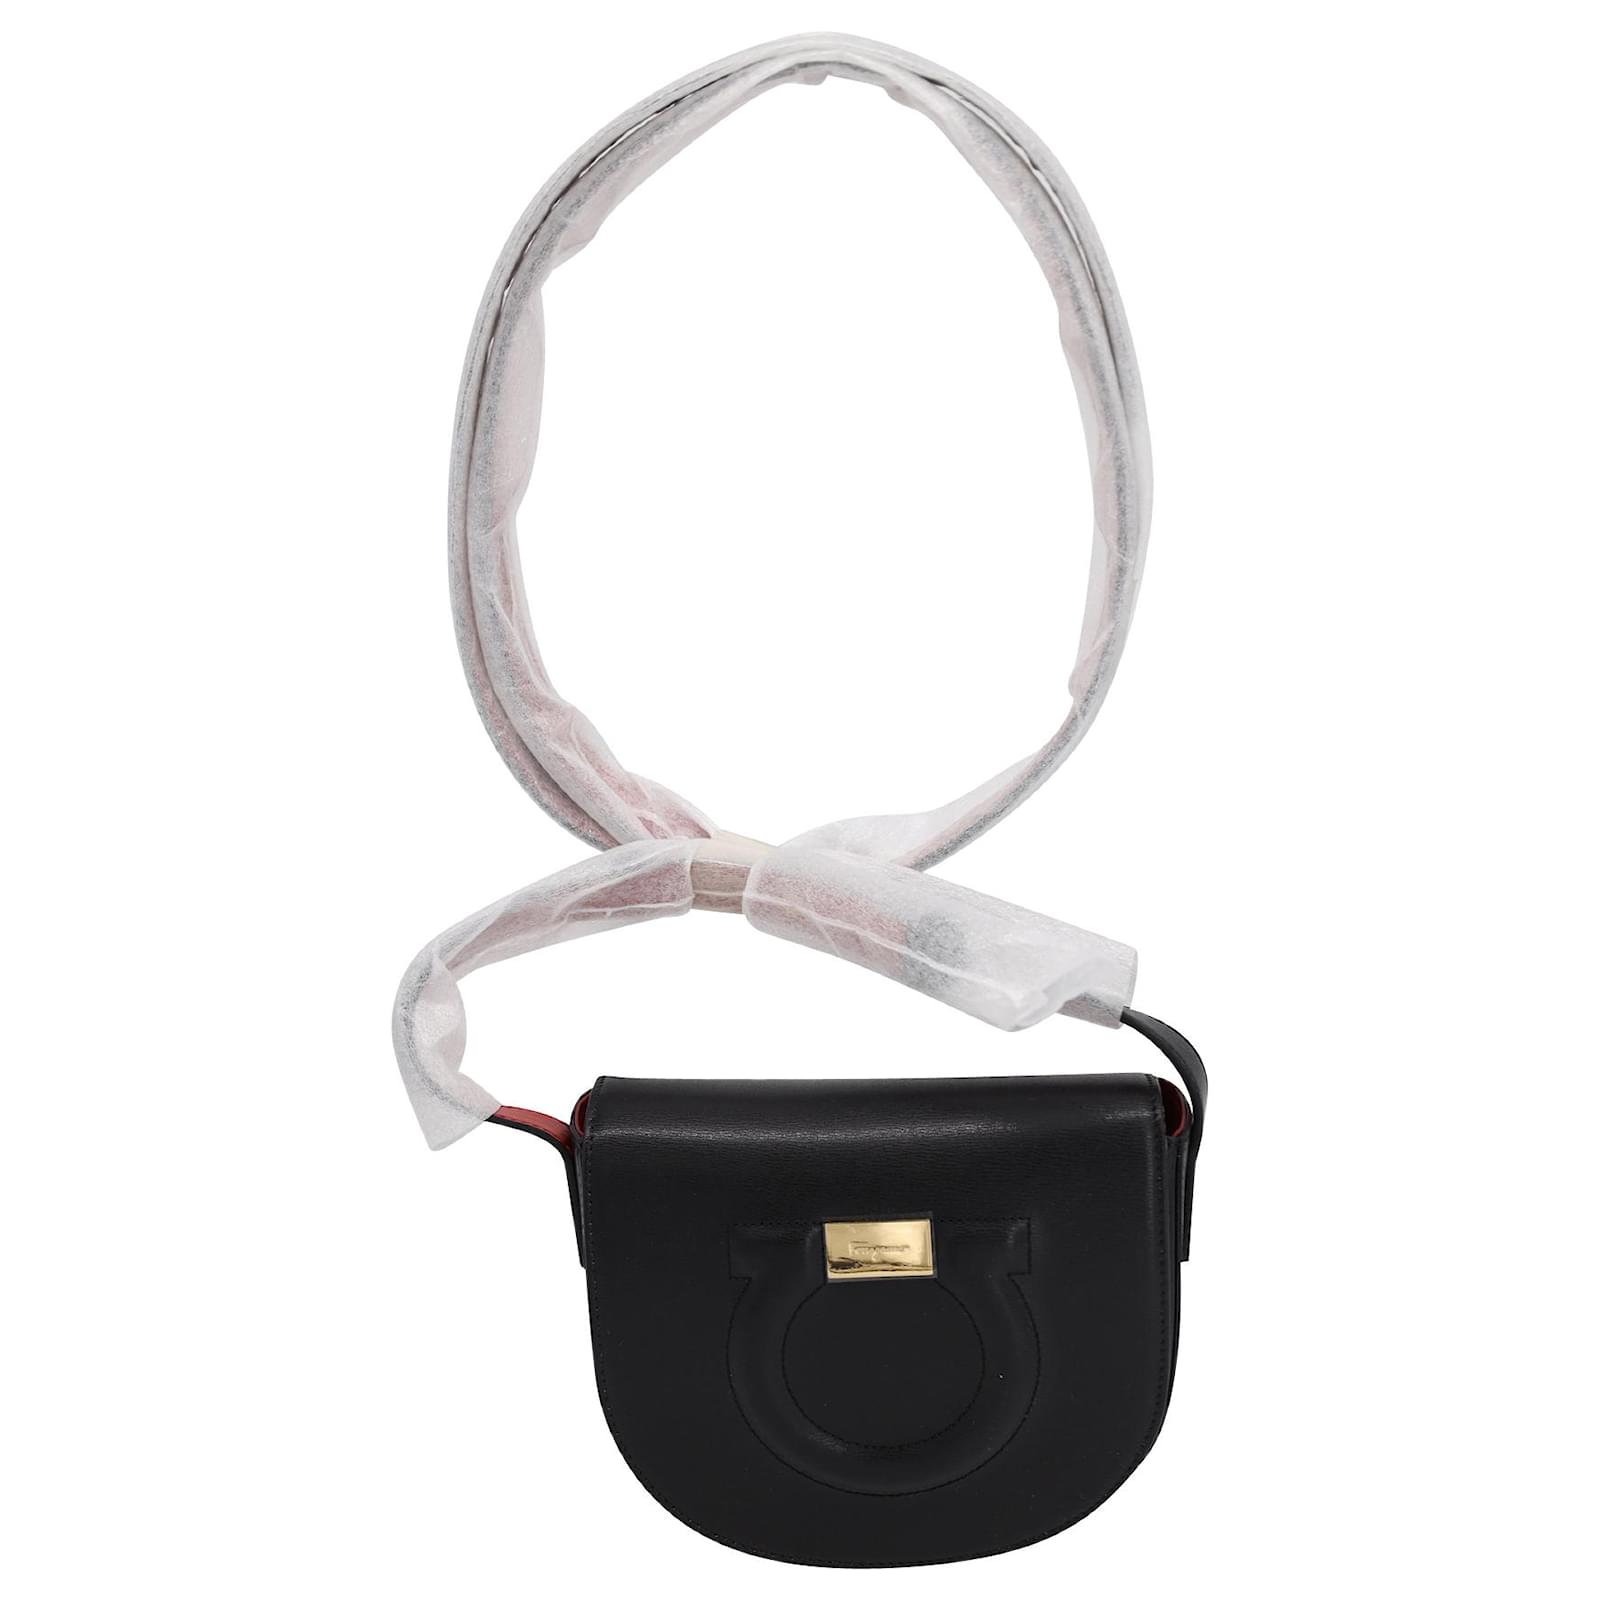 Ferragamo Black Leather Gancini Crossbody Bag